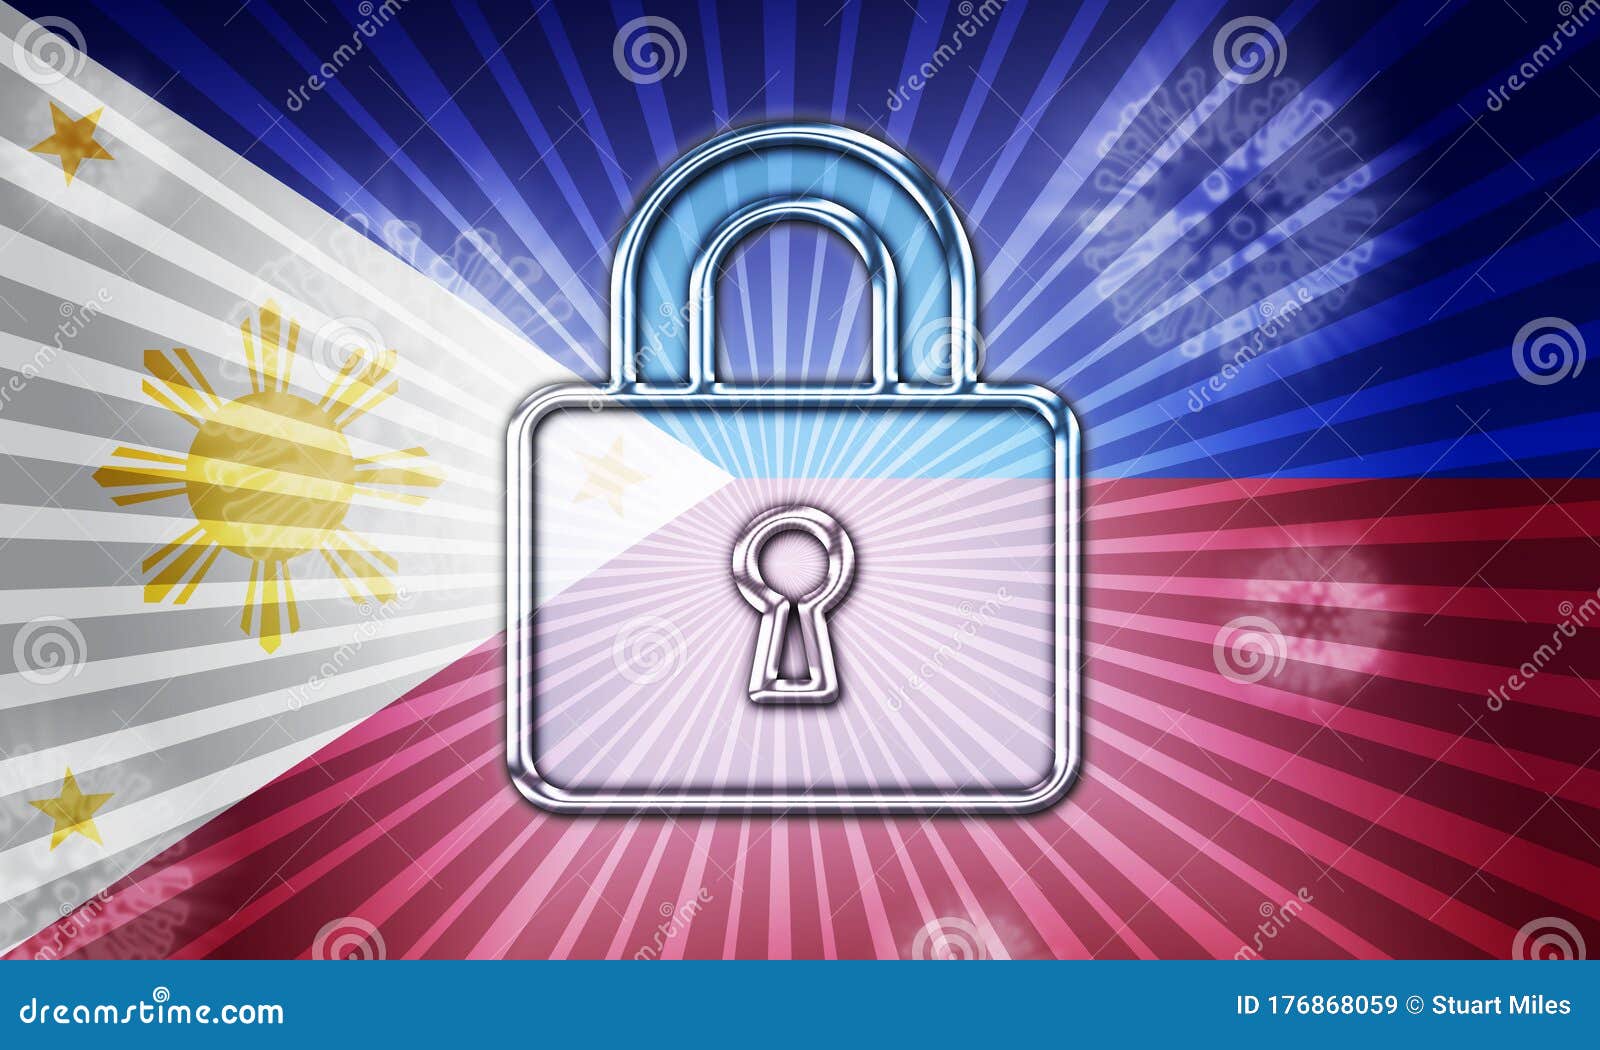 philippines lockdown preventing coronavirus epidemic or outbreak - 3d 